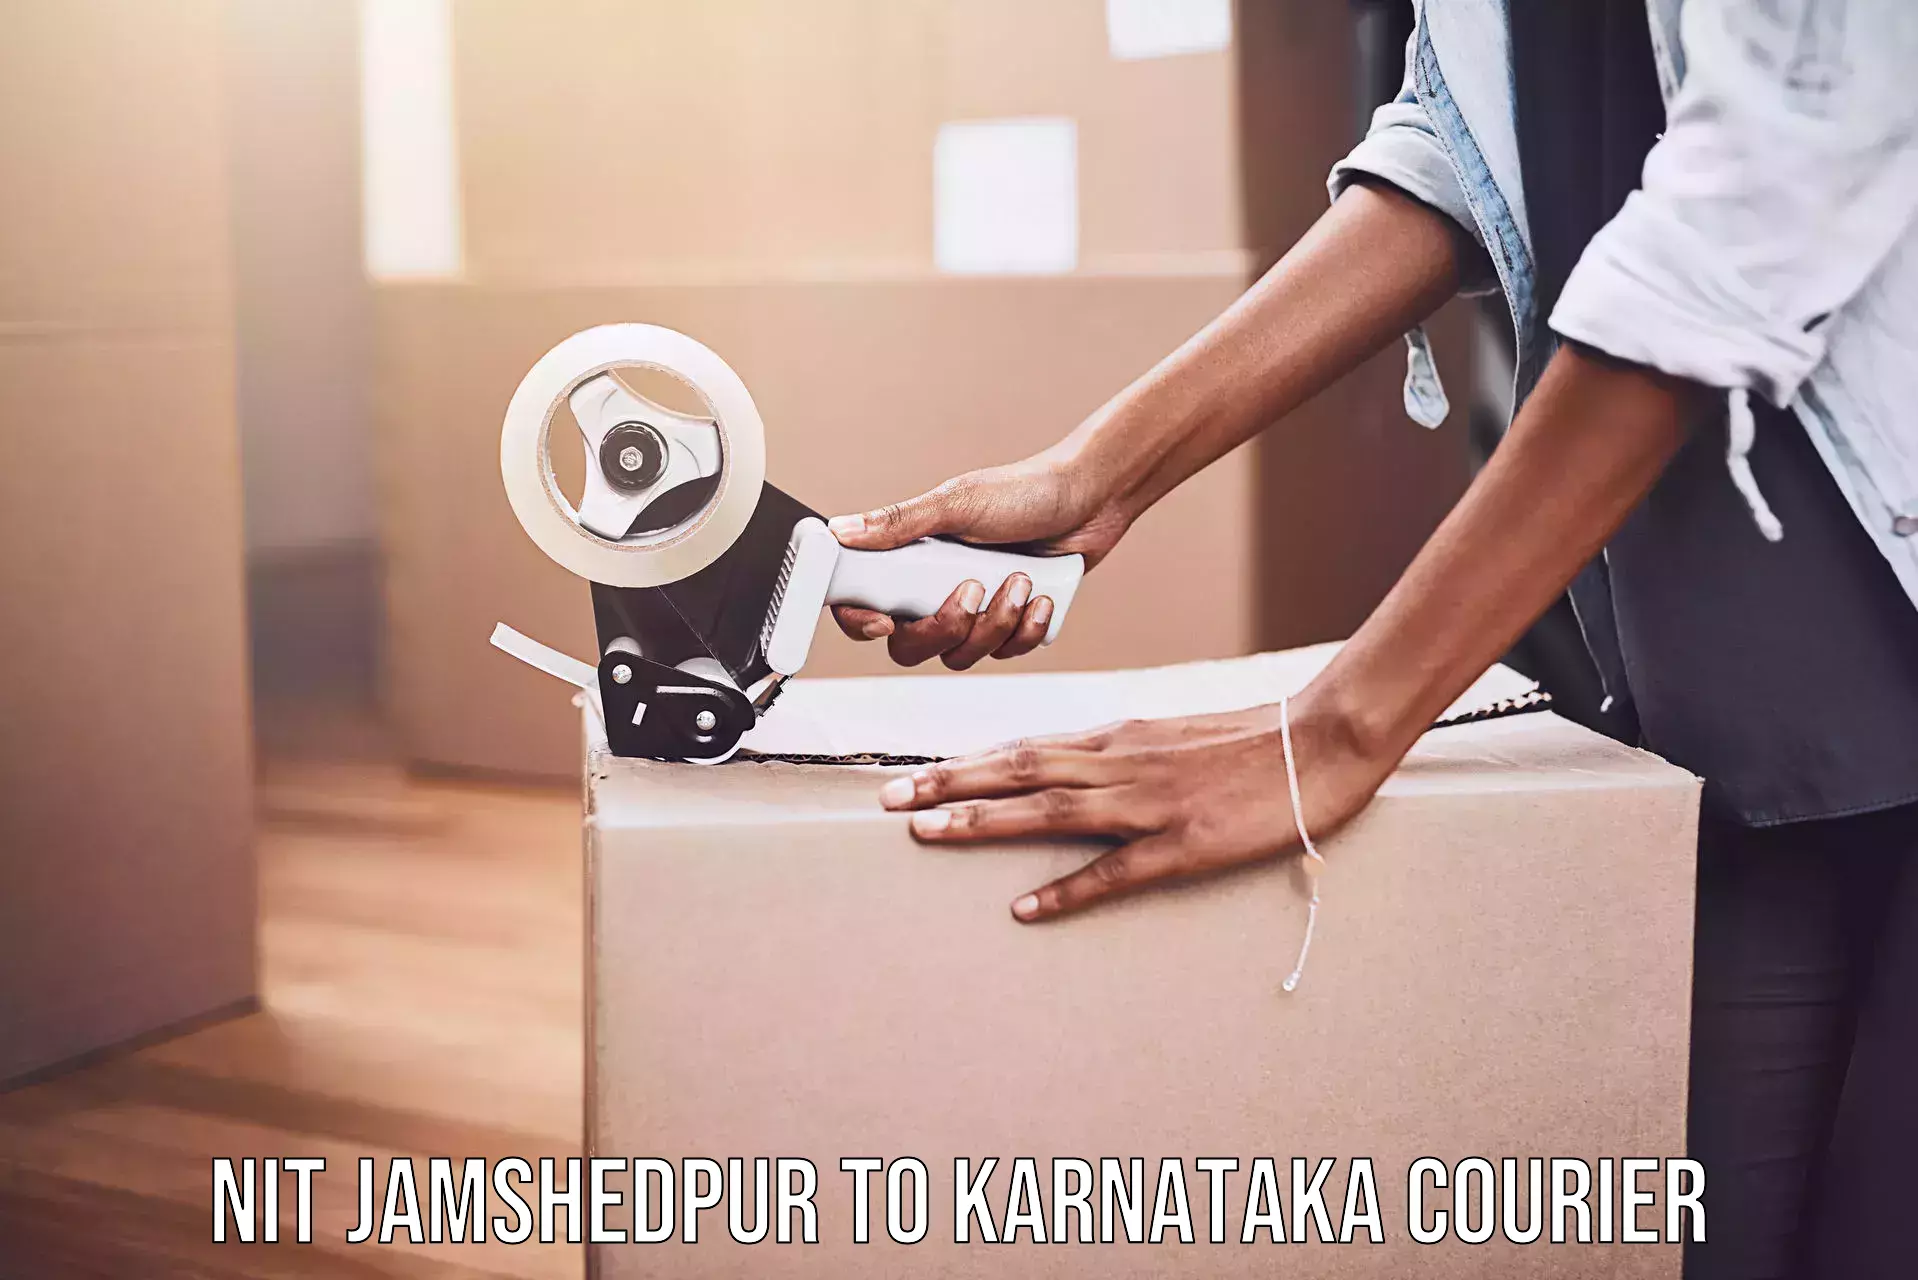 Express package handling NIT Jamshedpur to Kanjarakatte